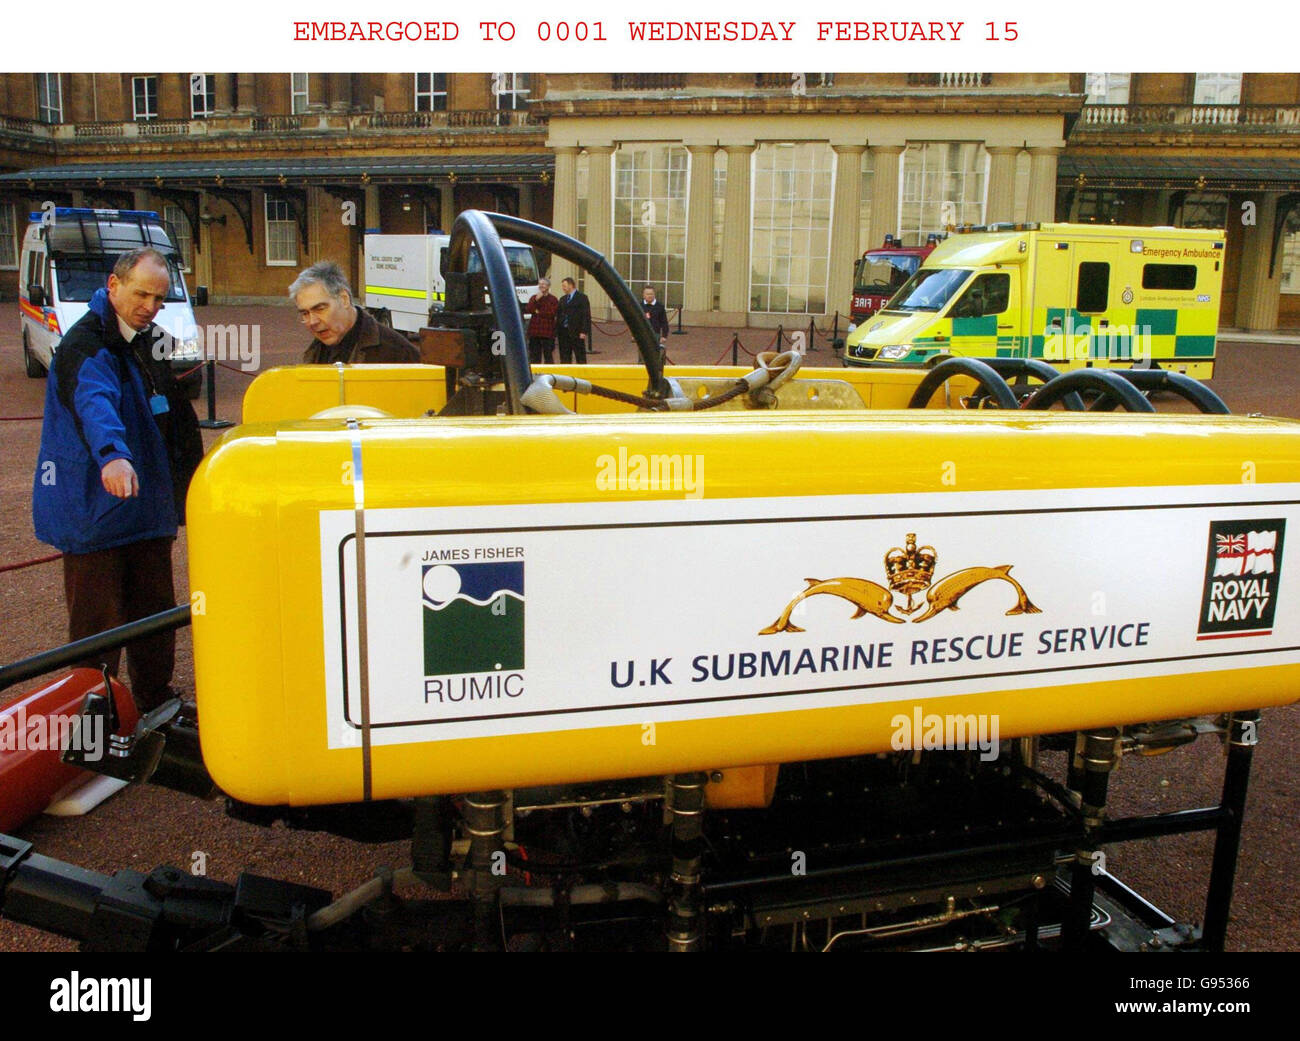 El comandante Ian Riches (izquierda) de la Royal Navy conversa con el diseñador de iluminación Thorsten Merriott (segunda izquierda), además de un robot Escorpio del Servicio de Rescate Submarino del Reino Unido en el cuadrilátero del Palacio de Buckingham en el centro de Londres, martes 14 de febrero de 2006. Los vehículos de respuesta a emergencias se reunieron en el palacio antes de la recepción de mañana de los Servicios de emergencia y respuesta a Desastres que se celebrará en el Palacio de Buckingham por invitación de la Reina Isabel II ASOCIACIÓN DE PRENSA Foto. El crédito de la foto debe decir: Johnny Green/WPA Rota/PA. Foto de stock